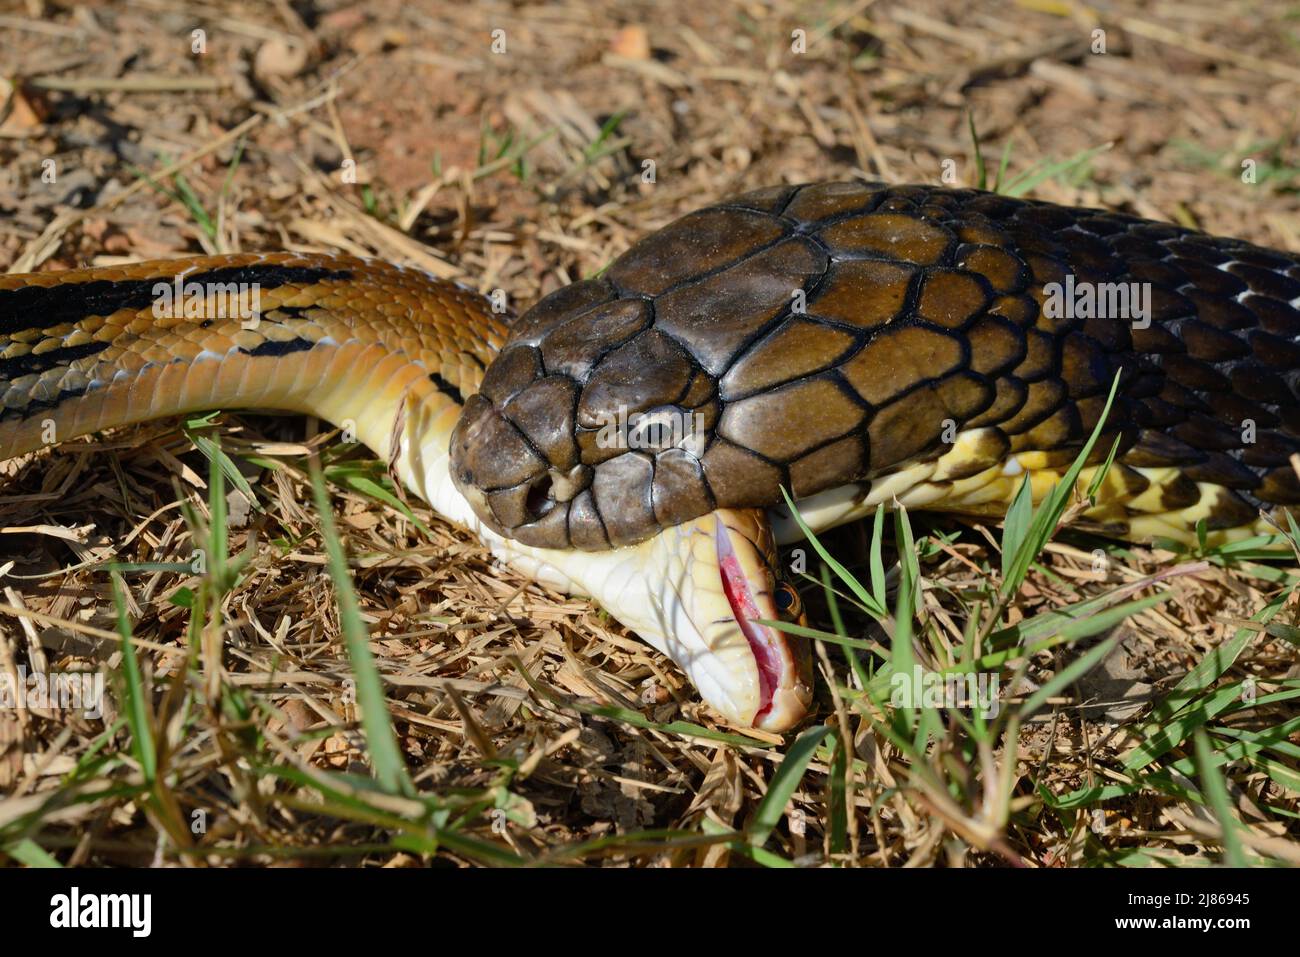 Rey cobra (Ophiophagus hannah) Ingestión de una serpiente. Tailandia Foto de stock